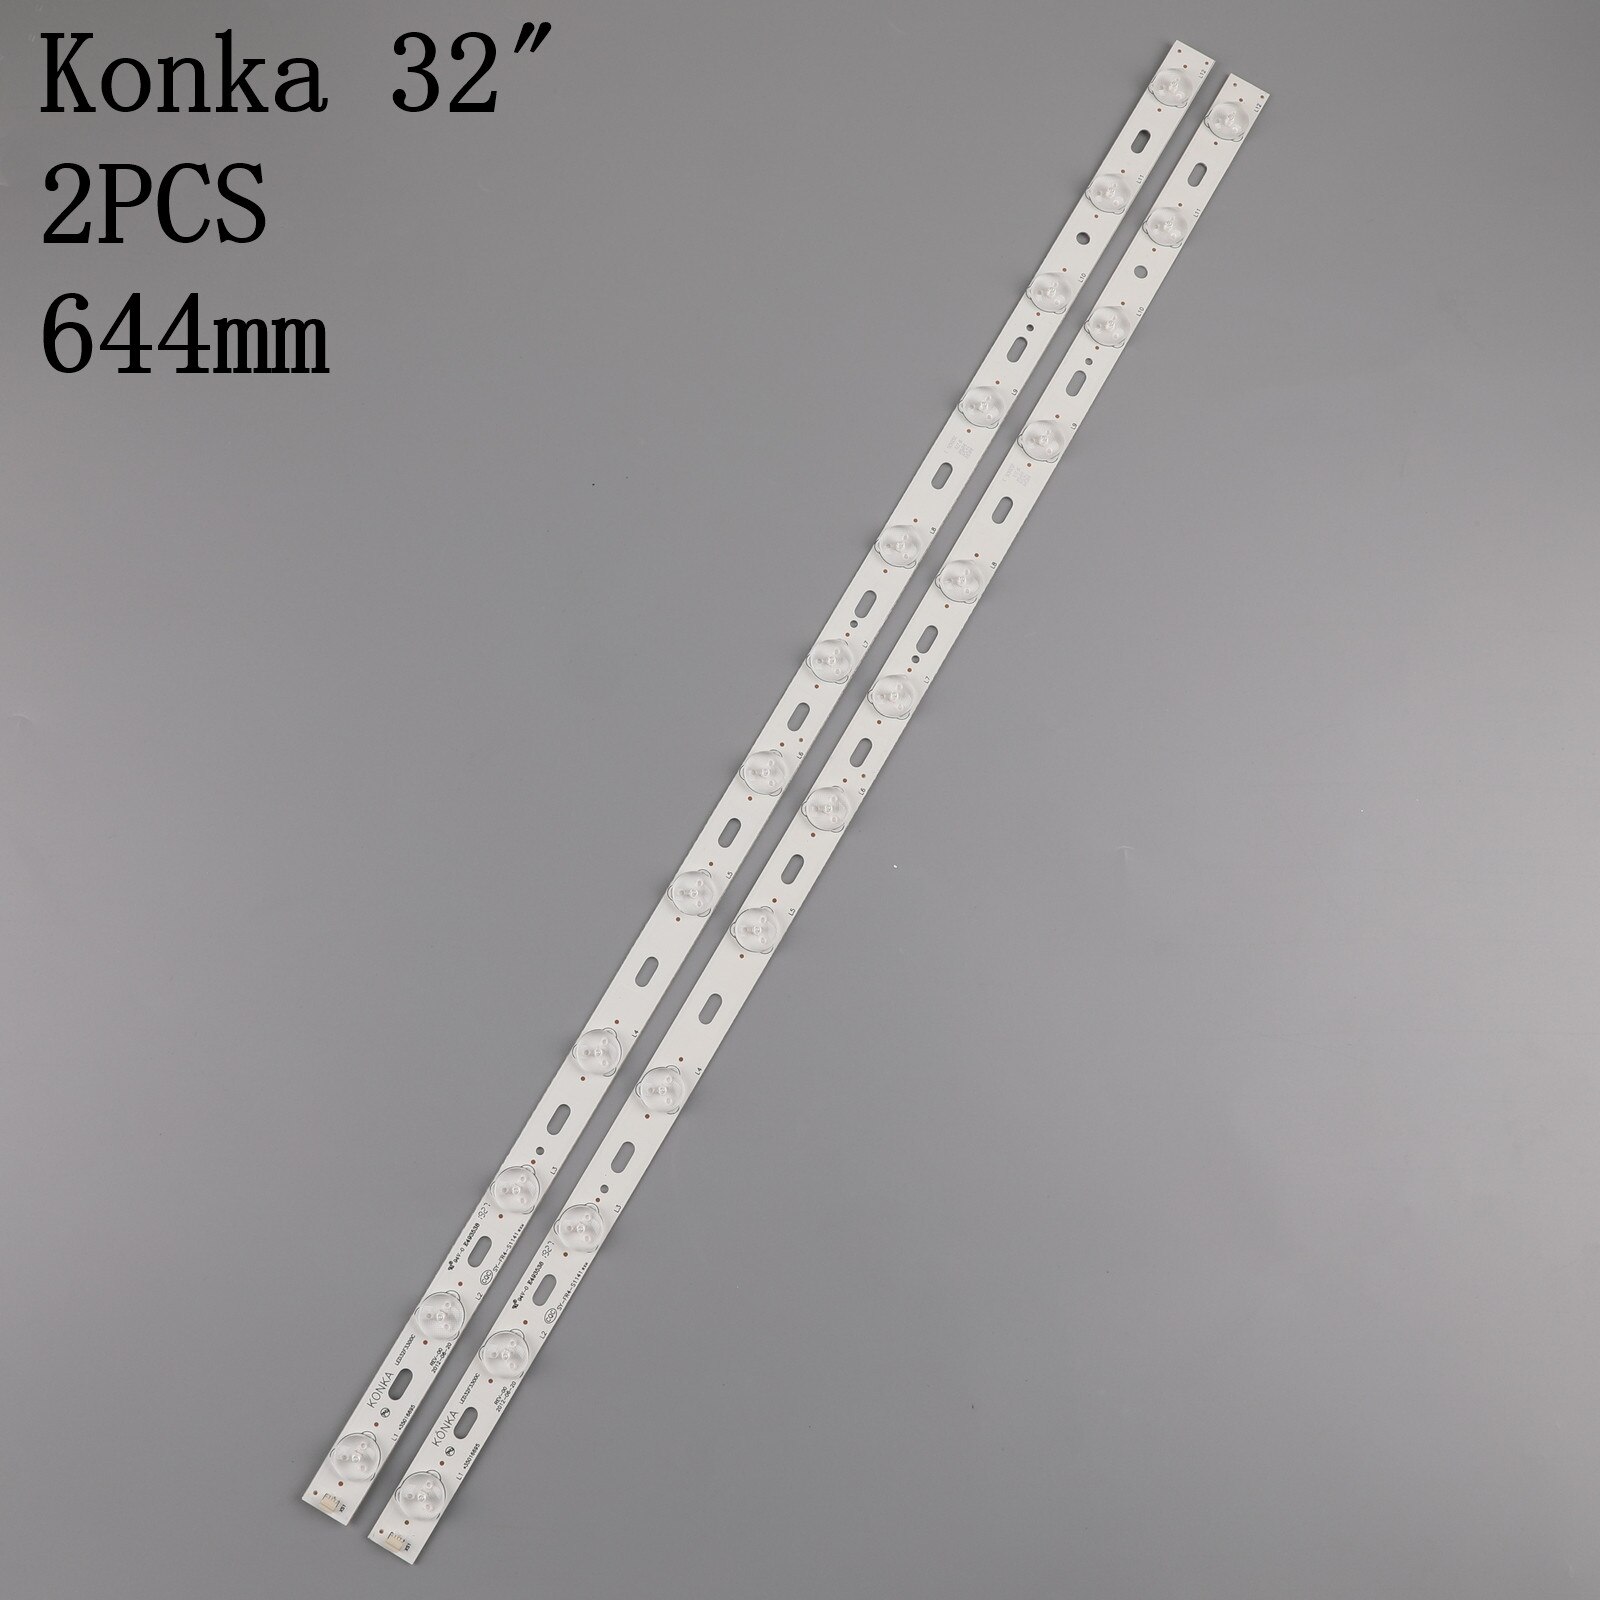 2 Stuks X 32 Inch Led Tv Backlight Lens Strips LED32F3300C 35016695 IC-BKKL32D019 Voor 32 ''Konka 12-LEDs 644 Mm